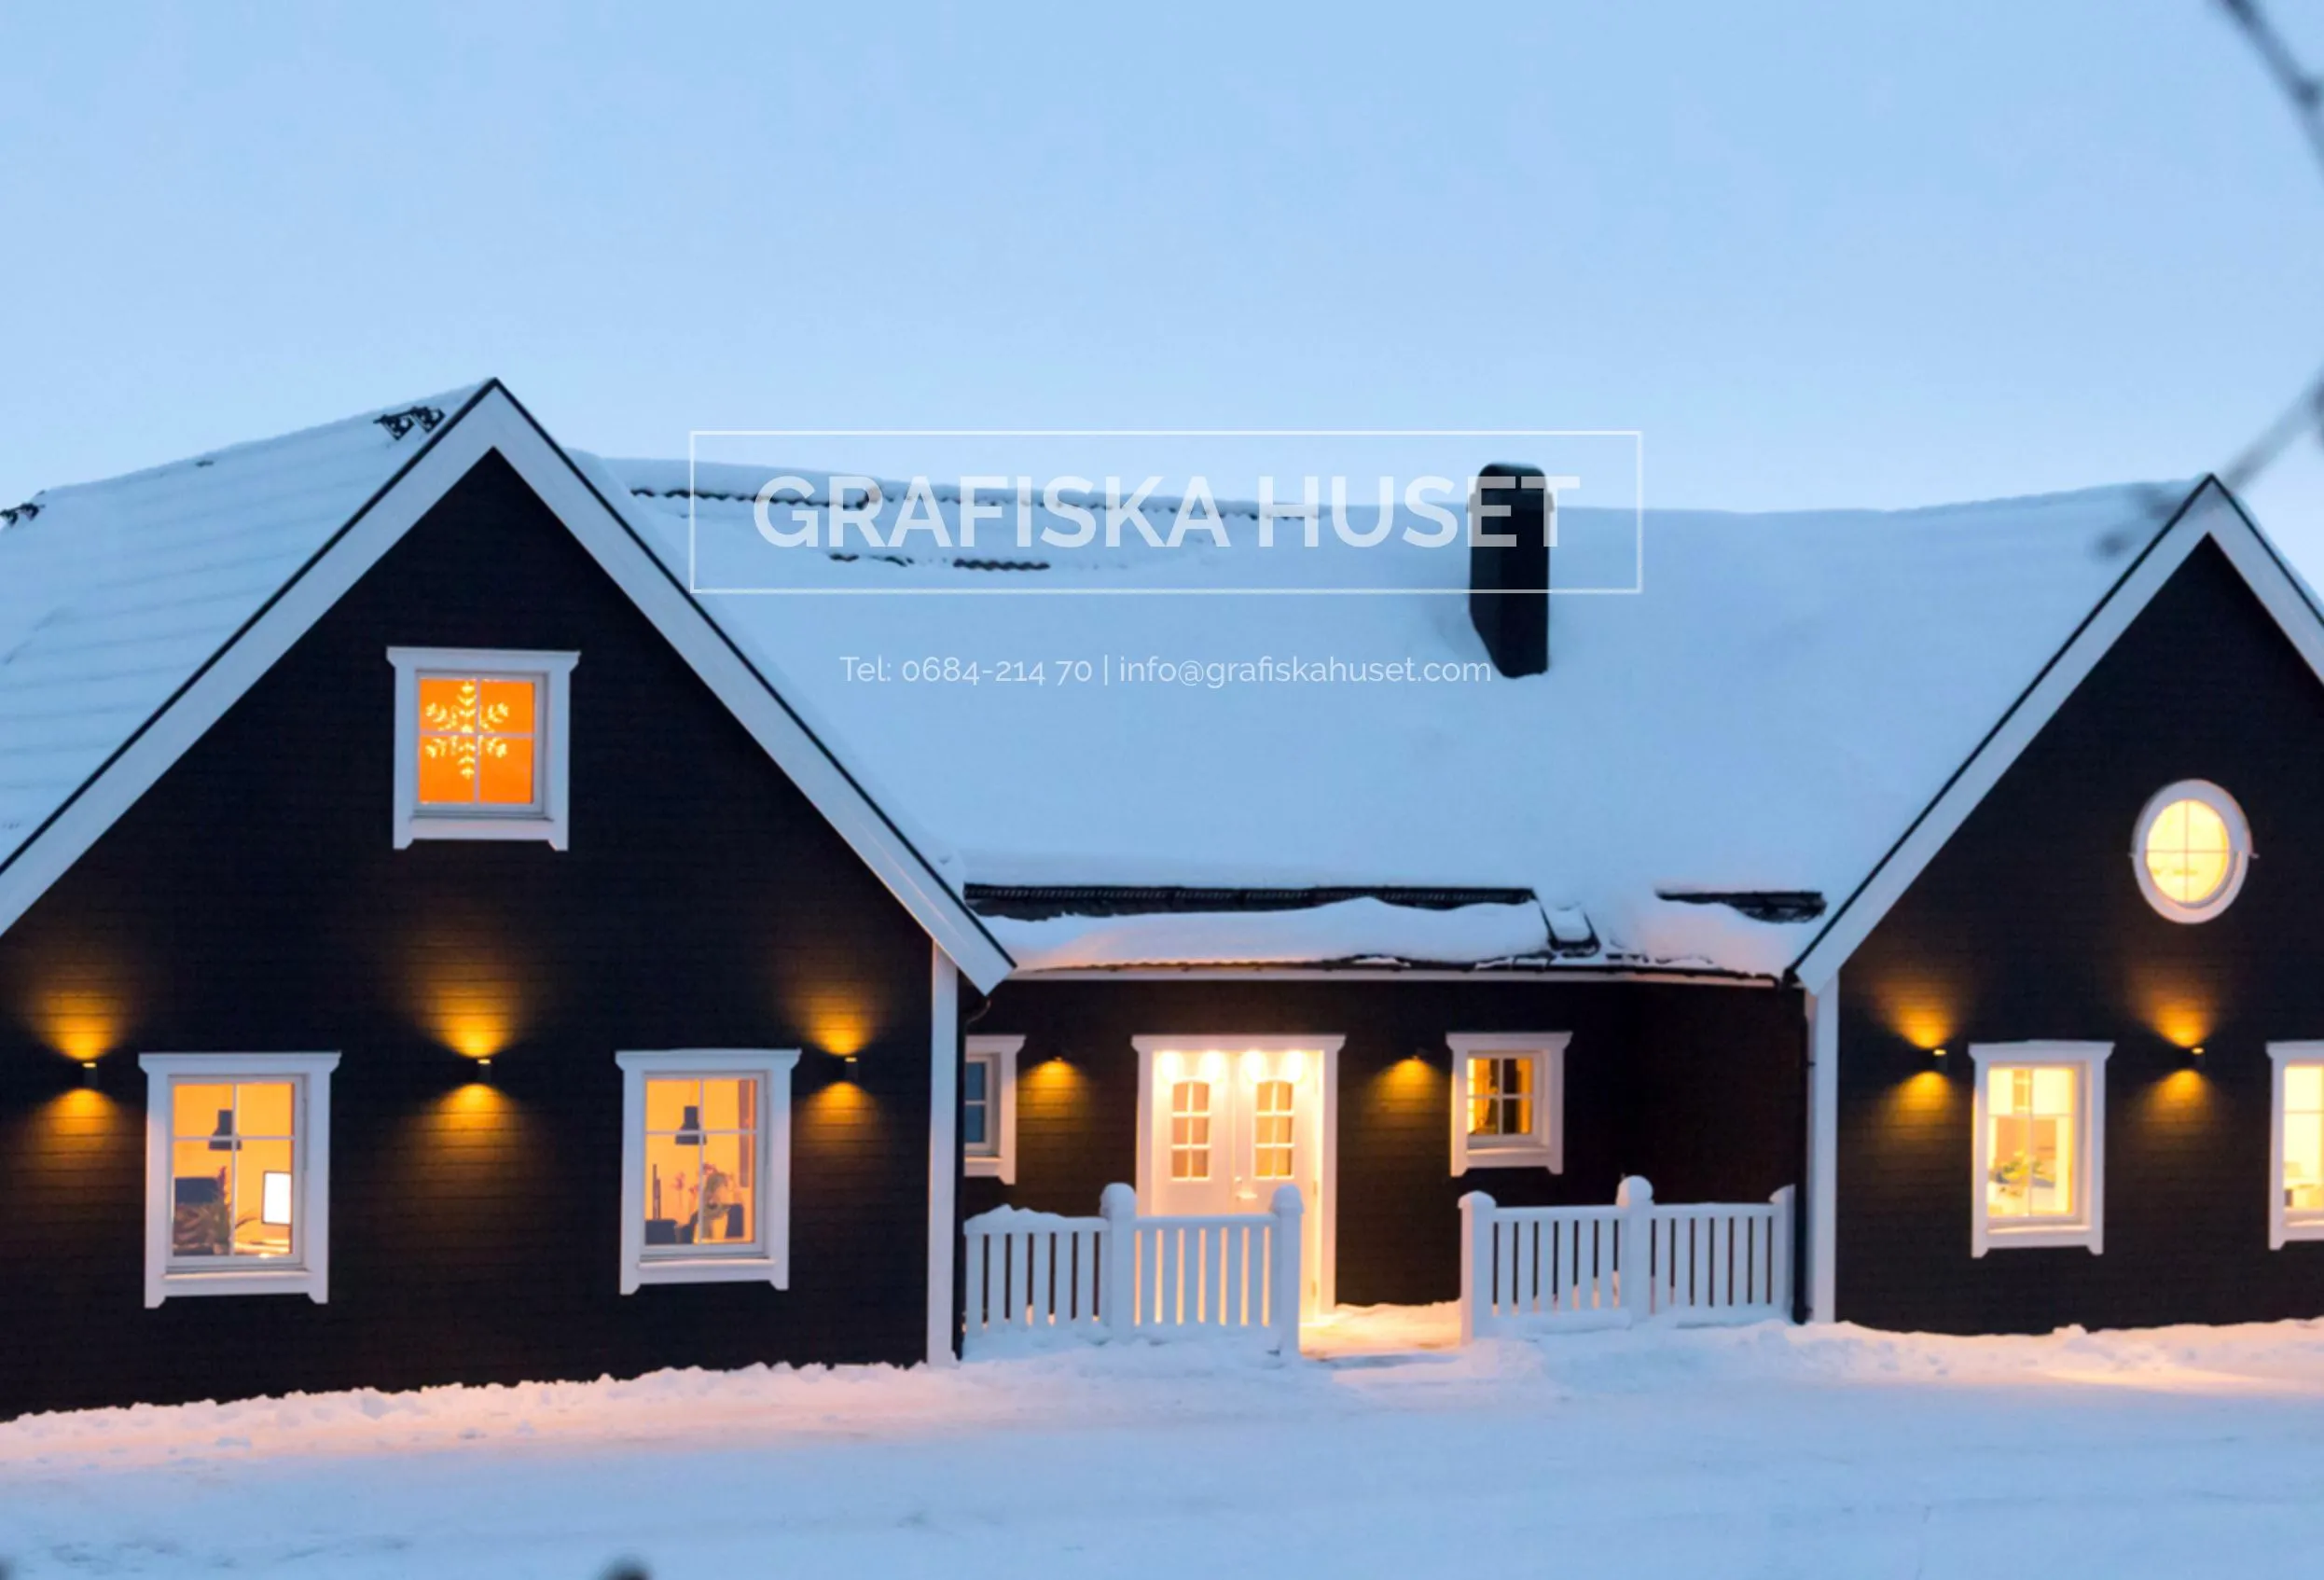 Grafiska huset vintertid, mörk träfasad med vitra fönsterfodet. Lampor som lyser.